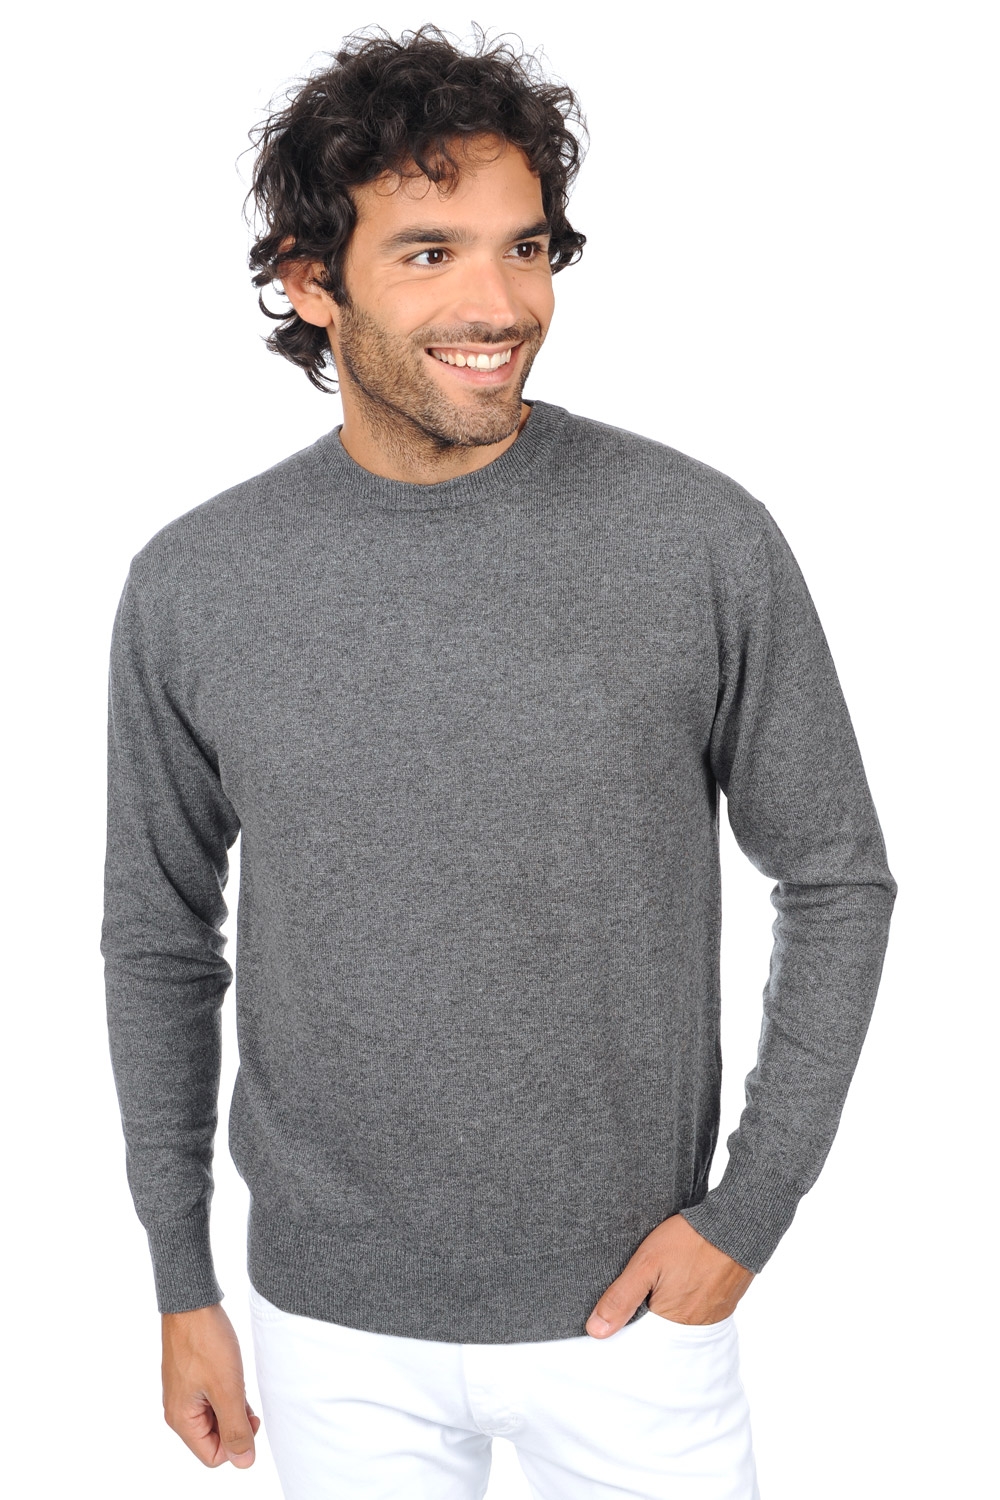 Cashmere men premium sweaters nestor premium premium graphite 2xl